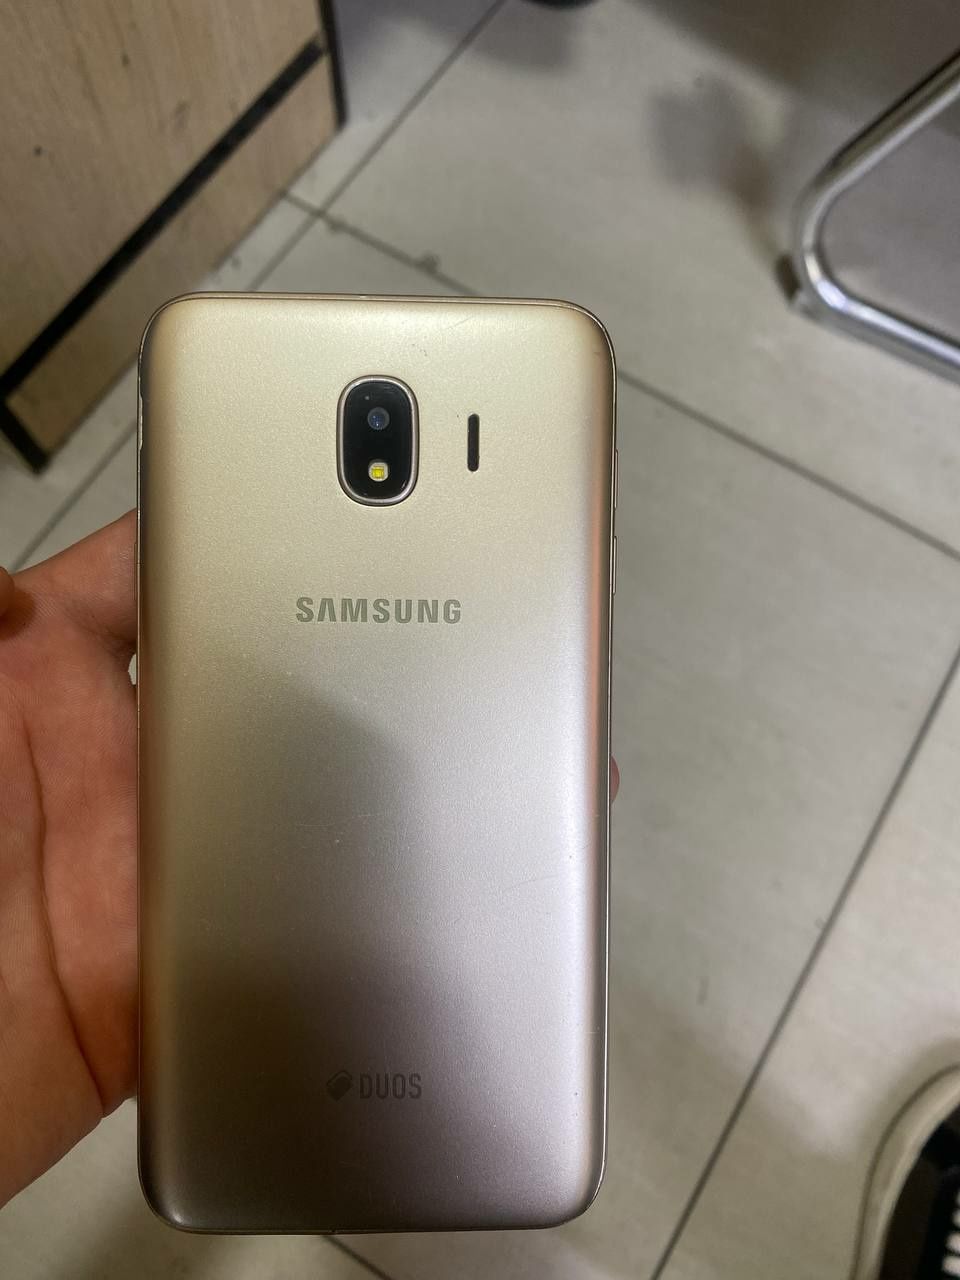 Samsung galaxy j4 16 gb